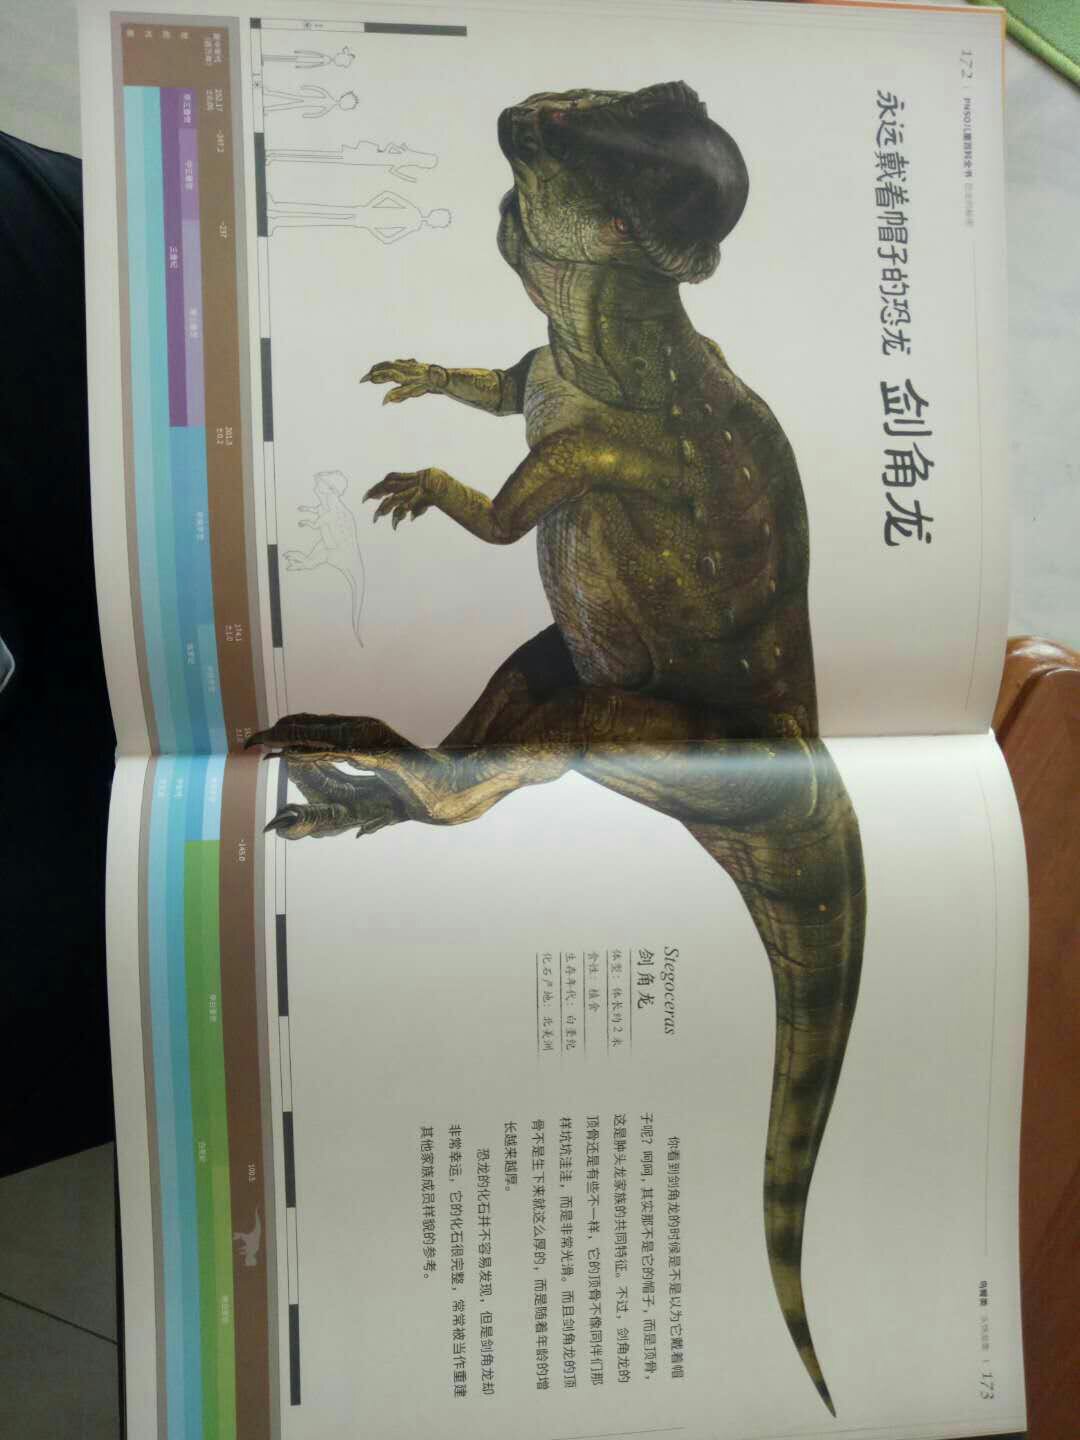 特别详细的恐龙介绍，直观，又详细，我啦孩子喜欢恐龙很多恐龙书籍，这本特别喜欢。介绍得又直接明了